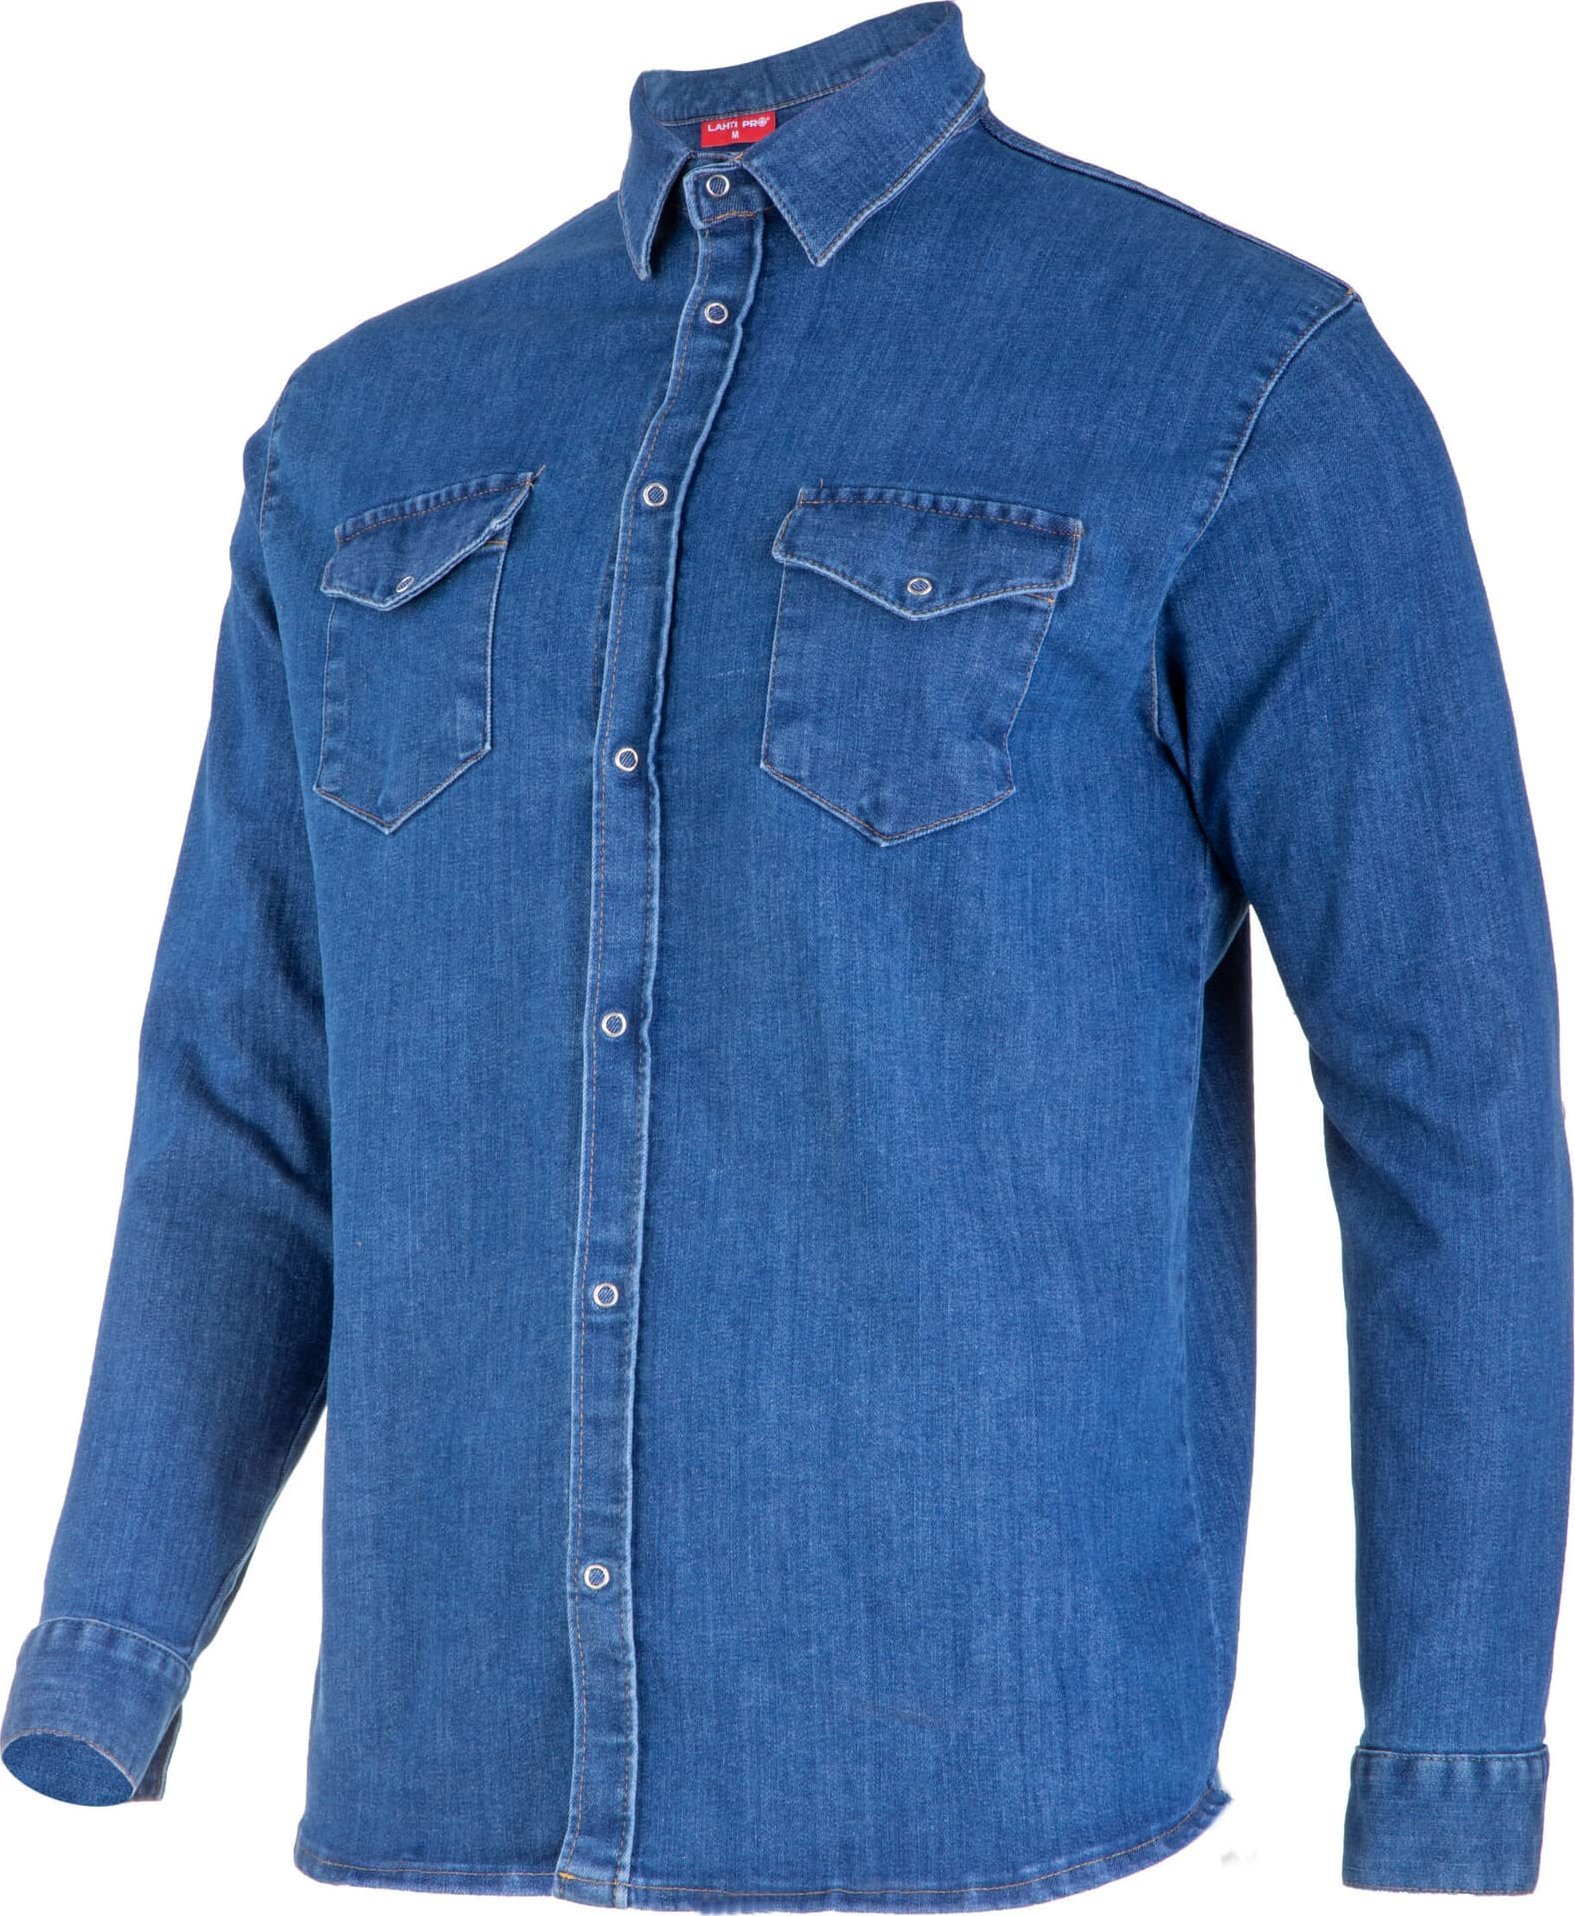 Lahti Pro Koszula jeansowa niebieska, 